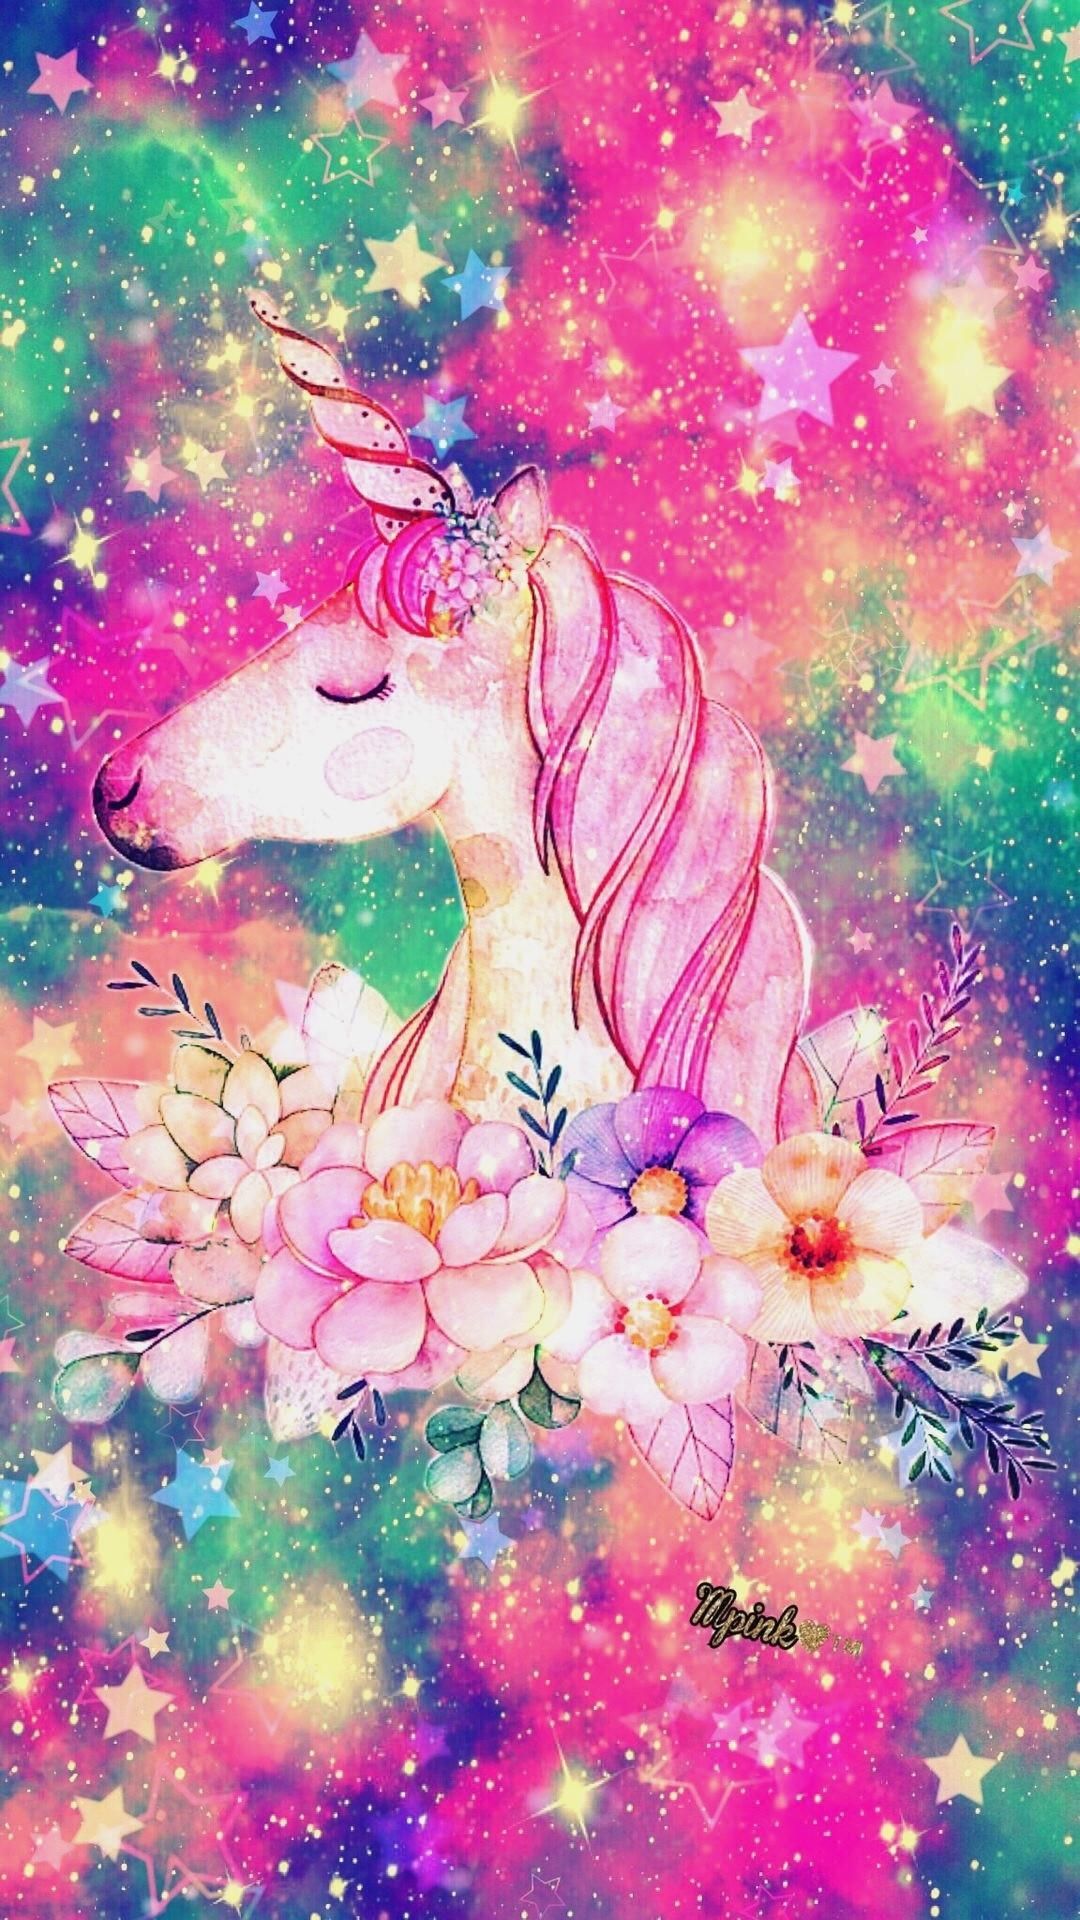 Unicorn wallpaper cute .com